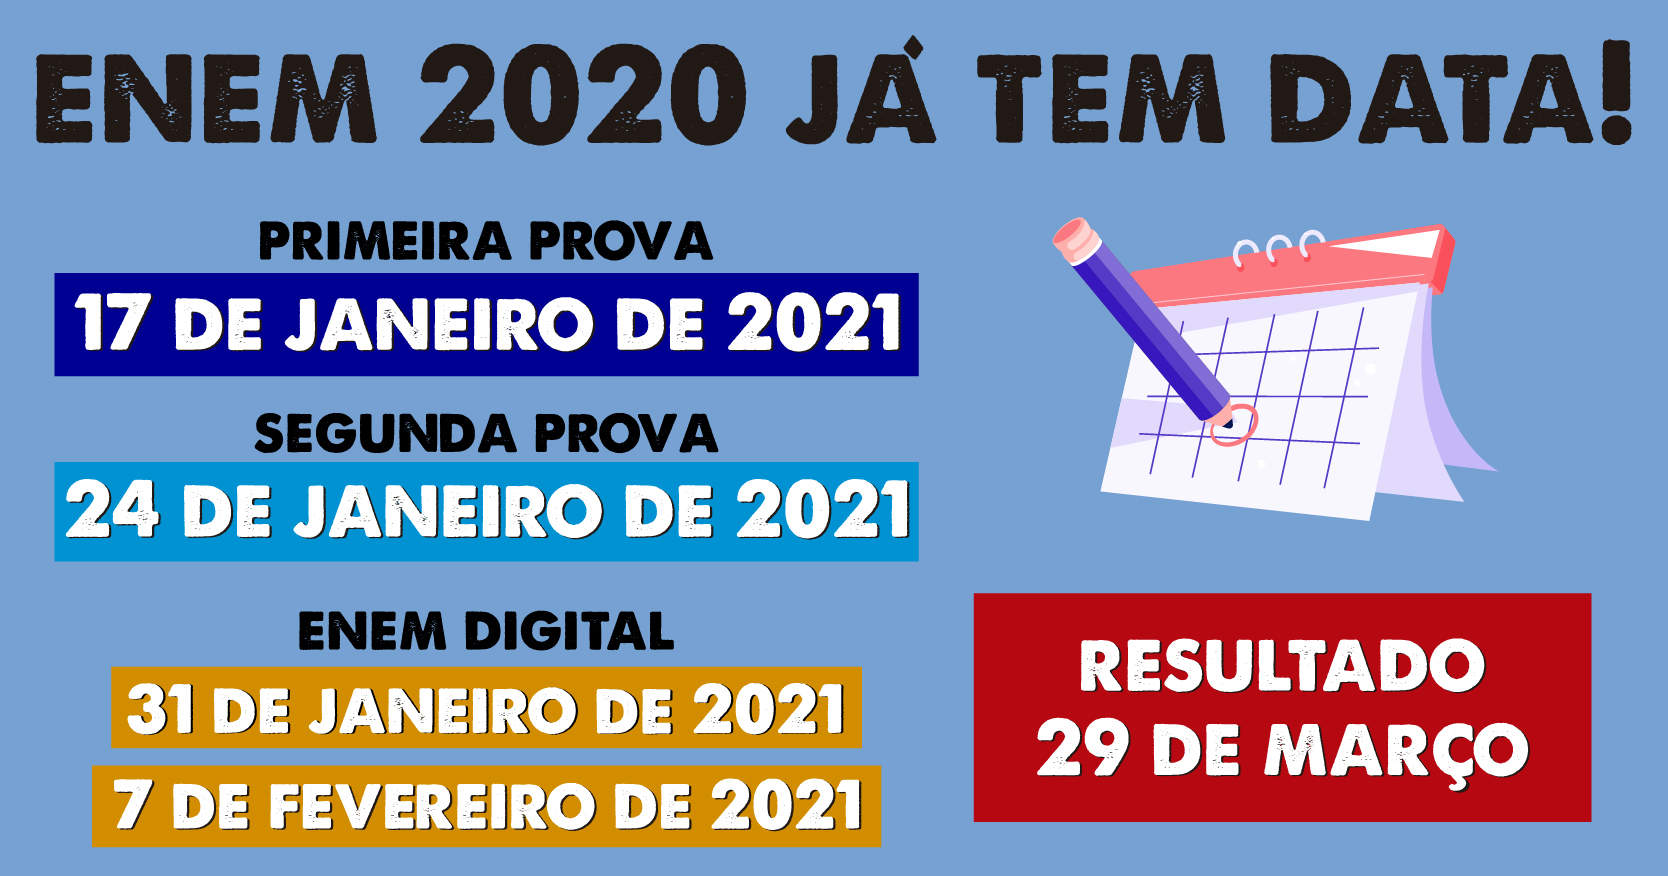 Nova data após o adiamento do Enem 2020: 17 e 24 de janeiro de 2021